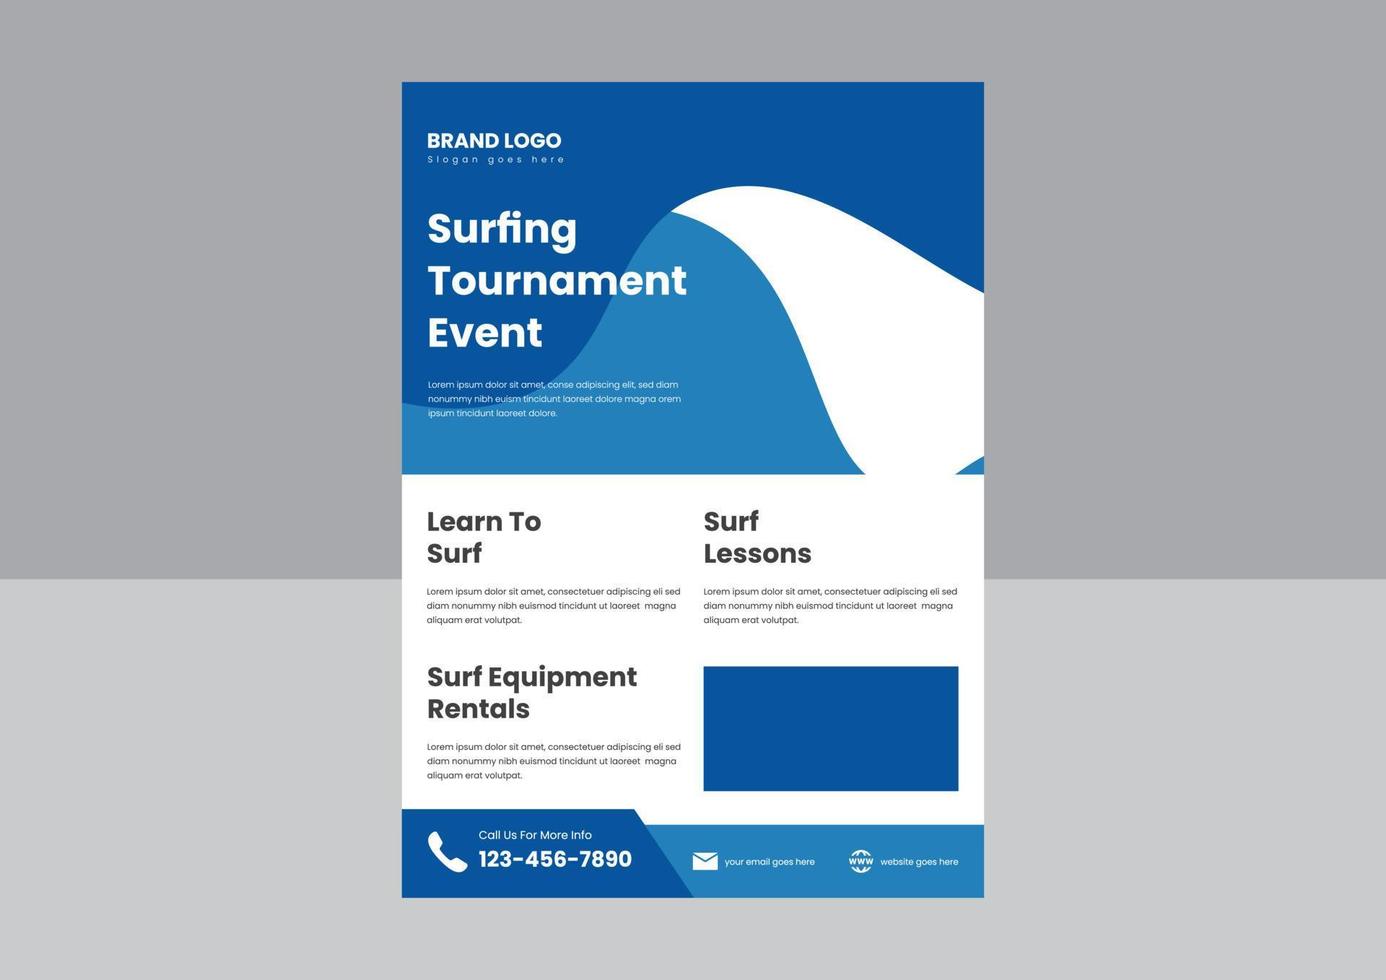 professionelle Surfunterrichts-Flyer-Poster-Designvorlage. Flyer-Poster-Designvorlage für Surfturniere. vektor